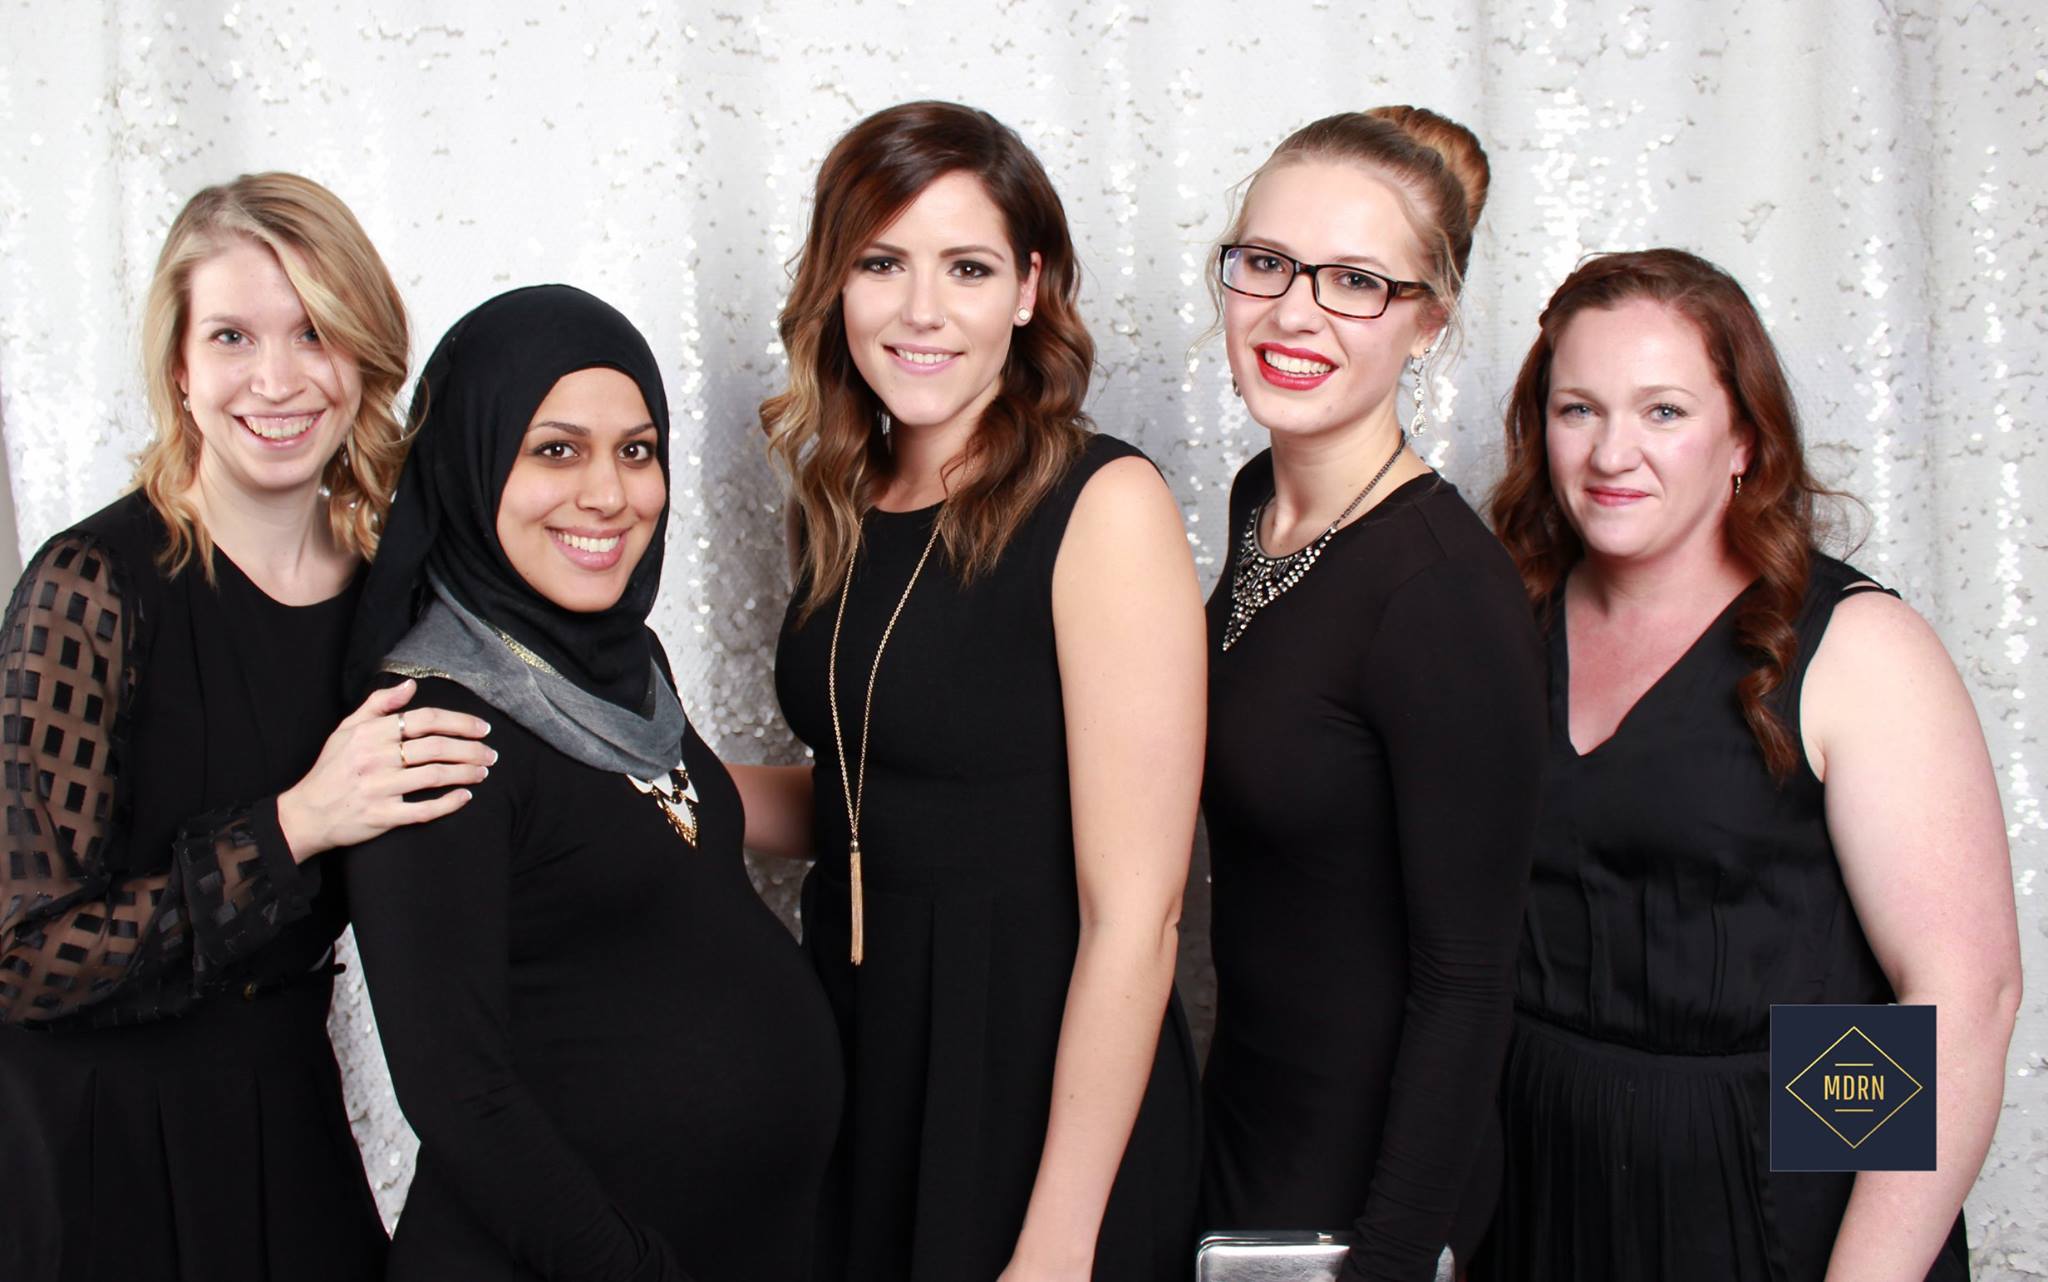 Ottawa wedding photographers, Amy Sturgeon, Batoul Hussain, Brittany Lee, Nicole Amanda & Charlotte Northrope